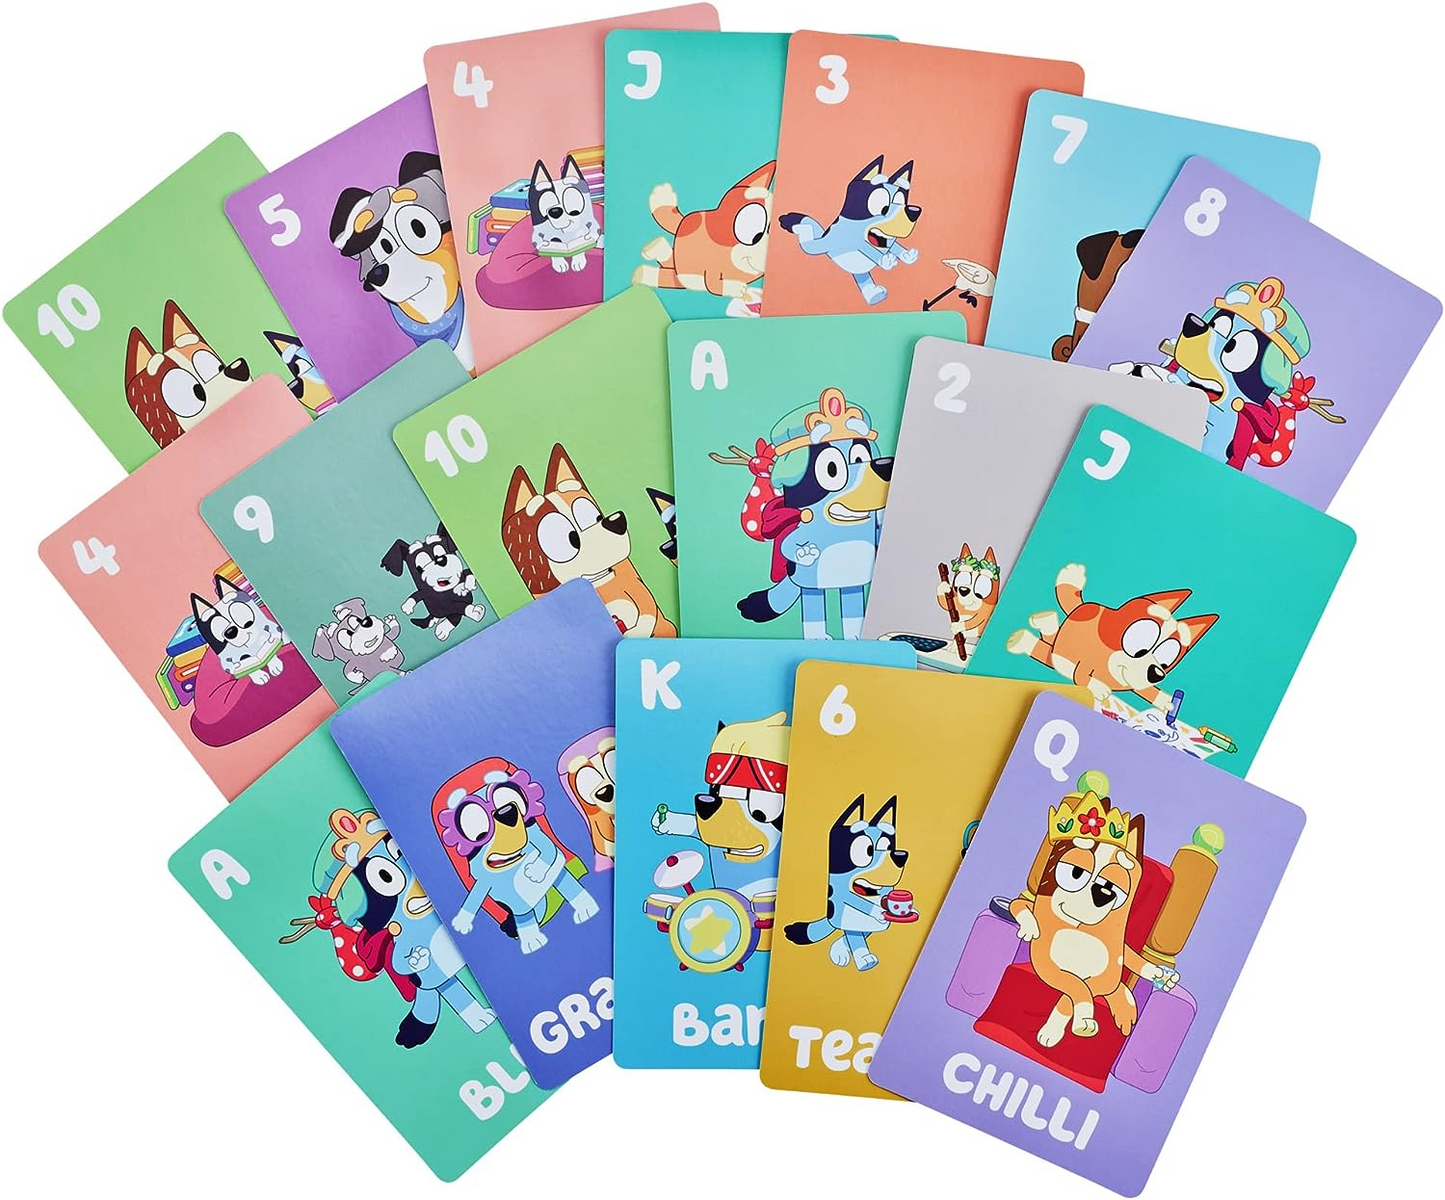 Bluey  Pacote de jogos de cartas 5 em 1 5 jogos de cartas favoritos em um pacote com personagens oficiais Bluey e seus amigos da escola